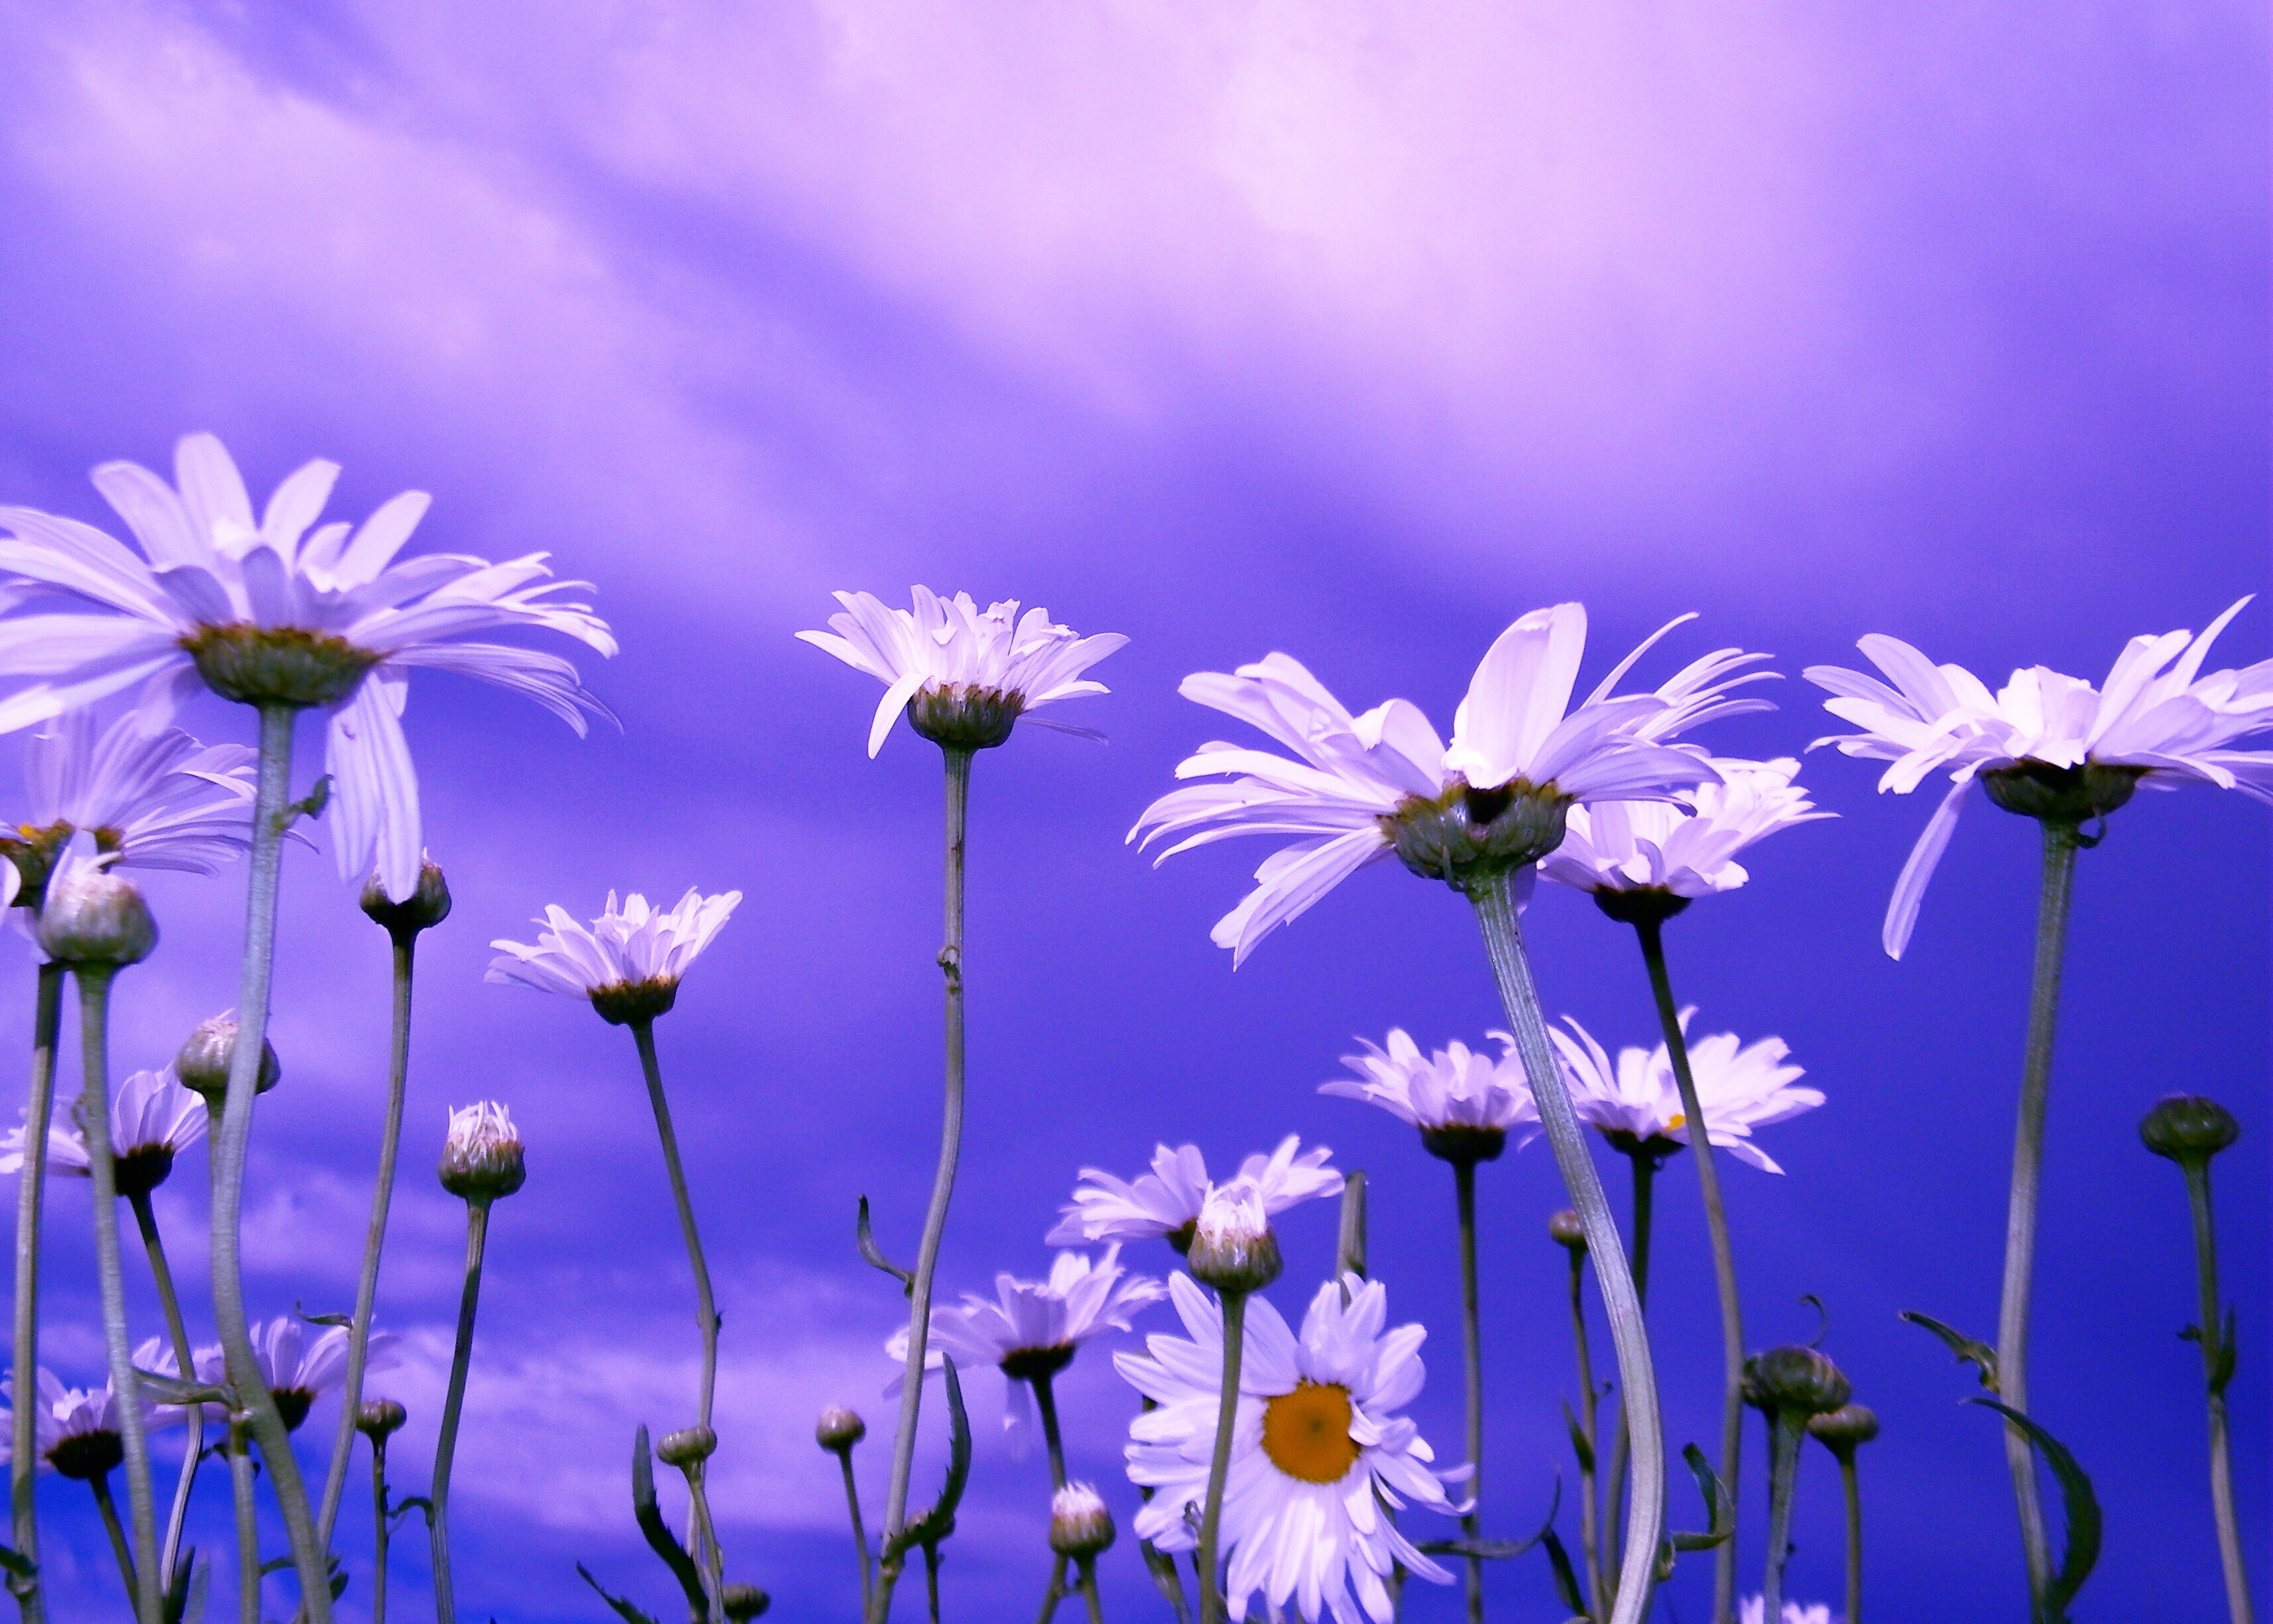 lovely flowers background wallpaper,flower,blue,purple,lavender,plant